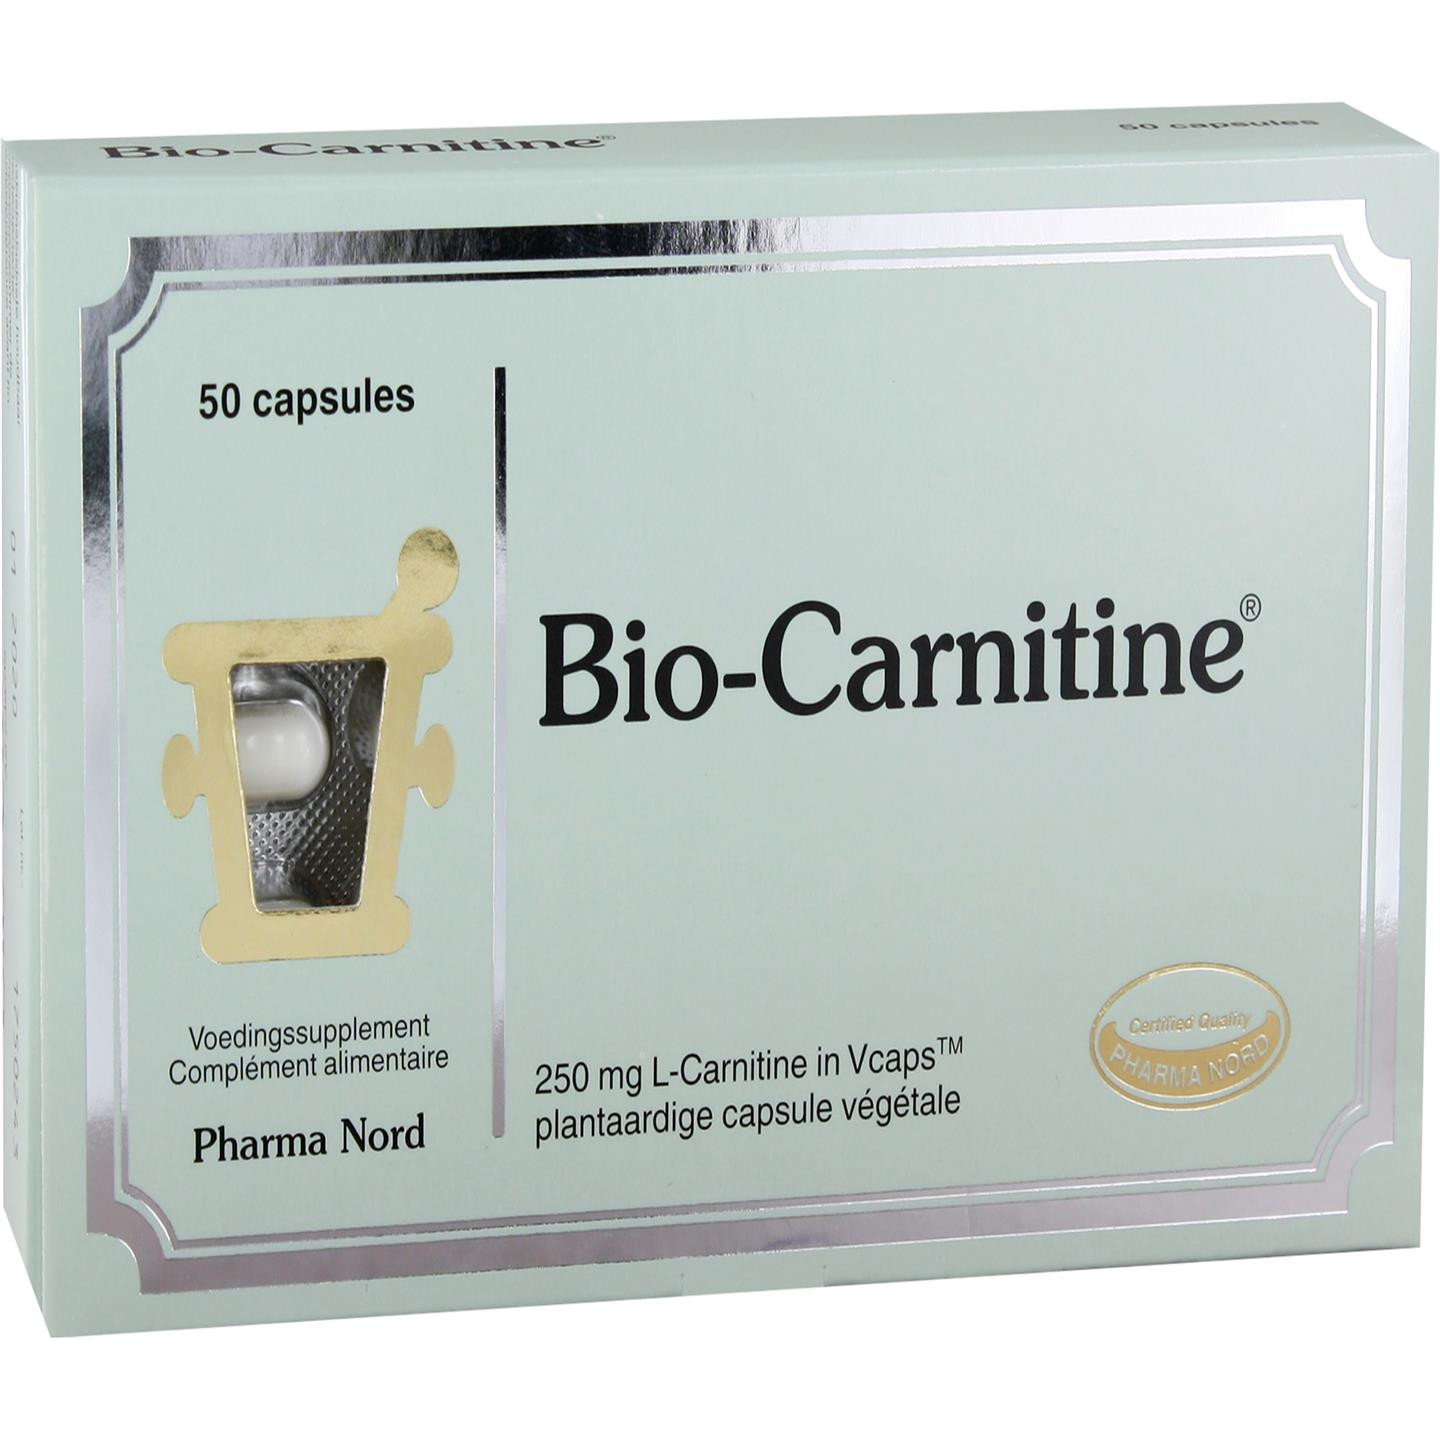 Bio-Carnitine